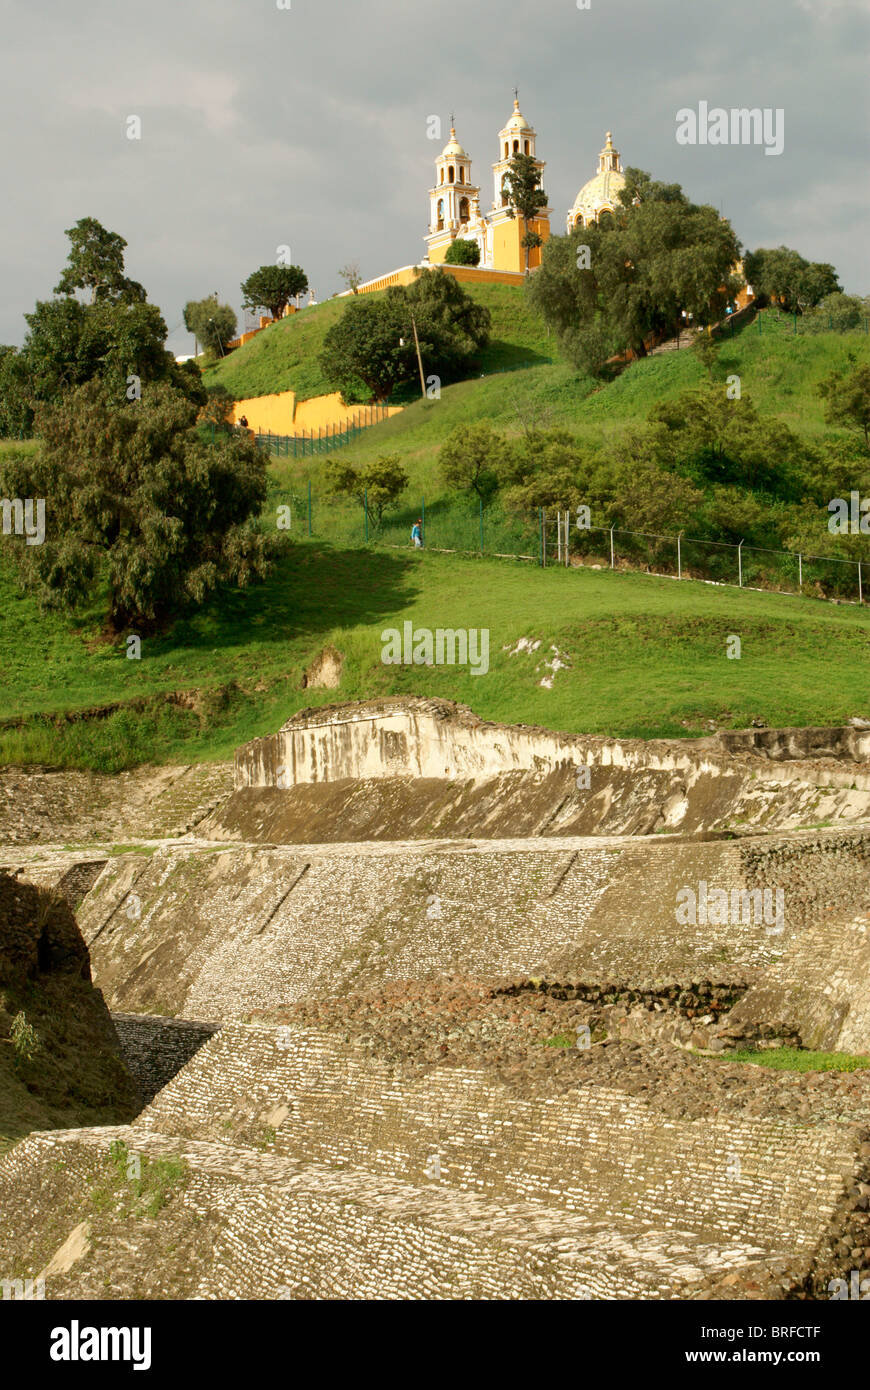 Pre-Hispanic ruins at base of Tepanapa Pyramid and Santuario de Nuestra Senora de los Remedios church in Cholula, Puebla, Mexico Stock Photo